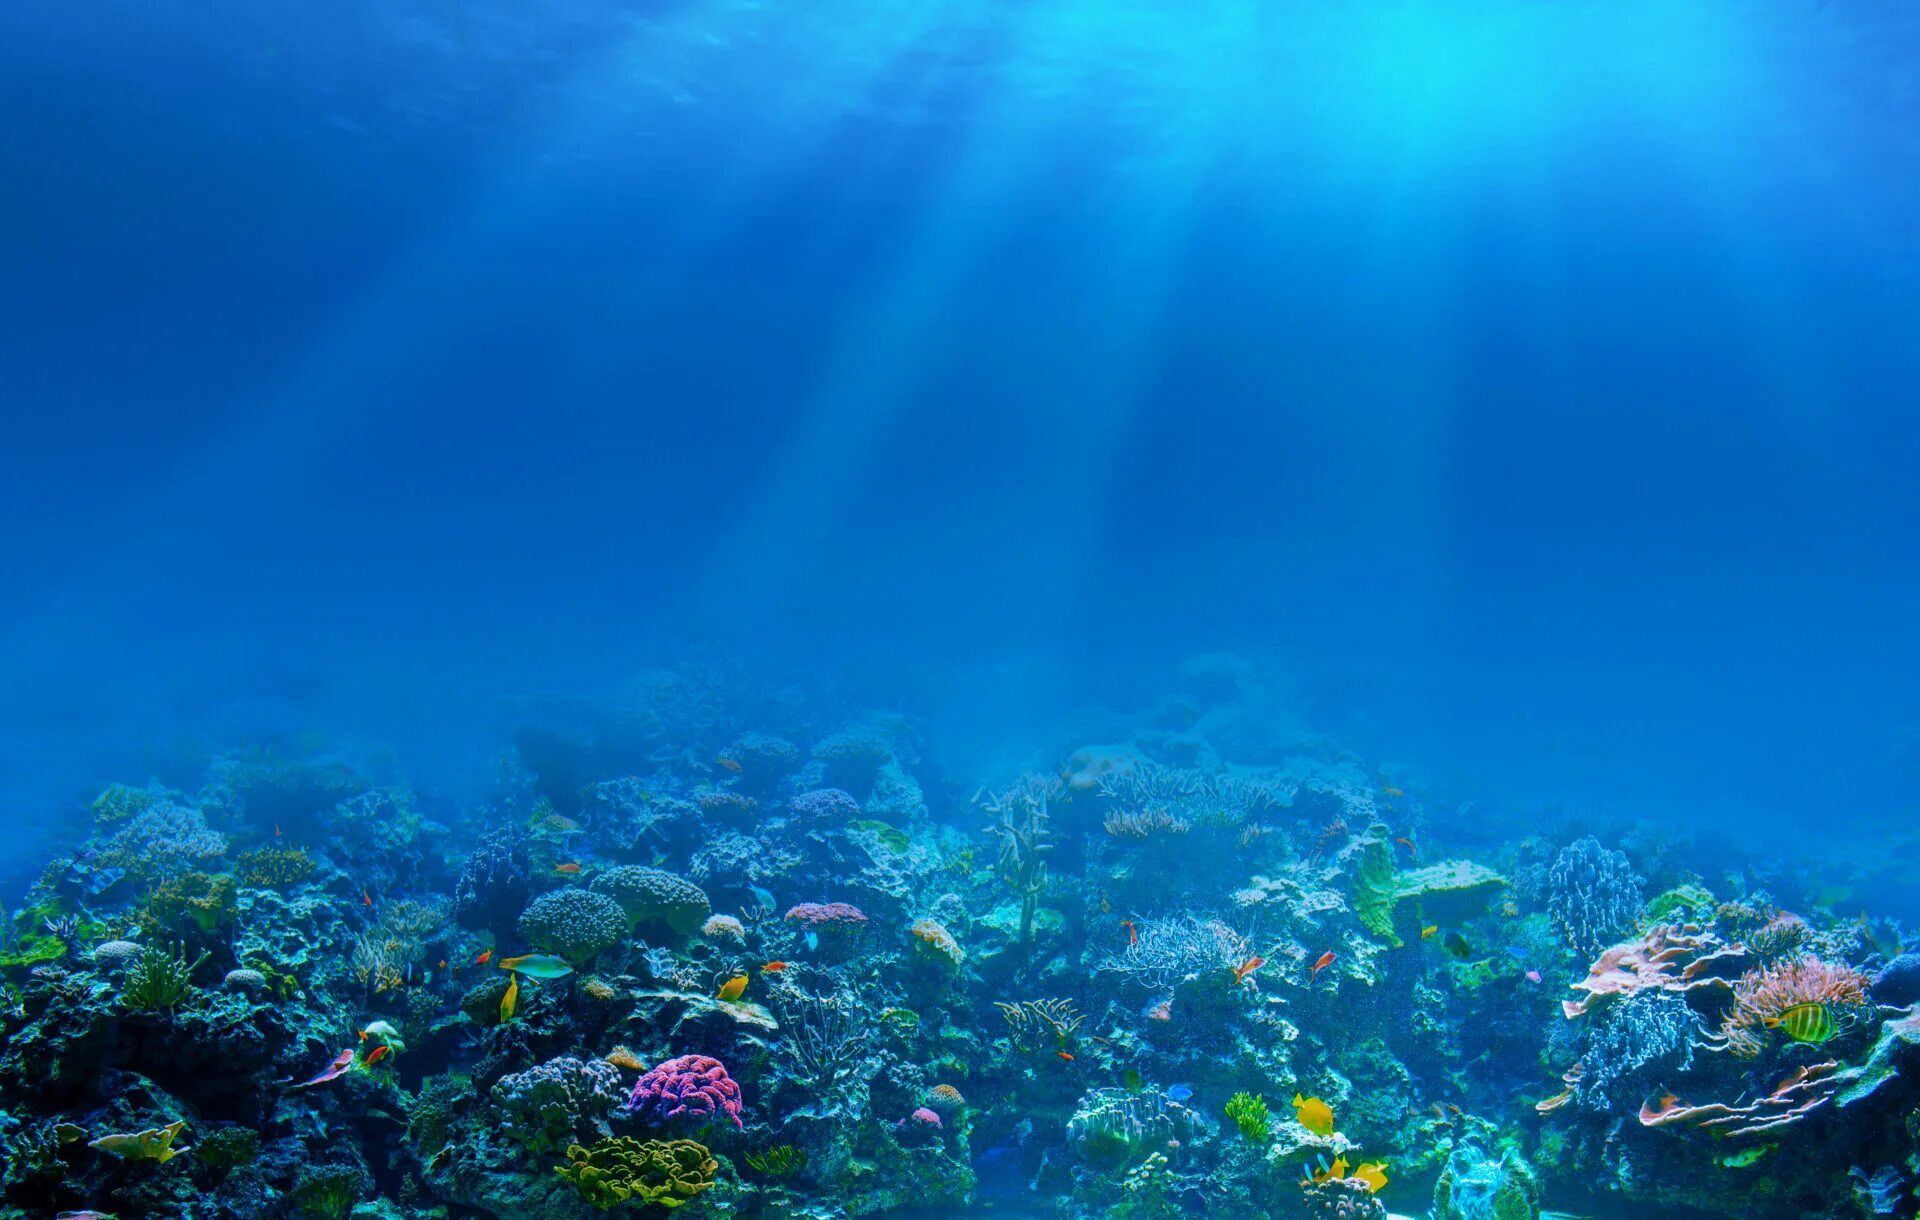 Картинка на дне моря. Рифы в океане. Подводный мир. Морское дно. Дно океана.